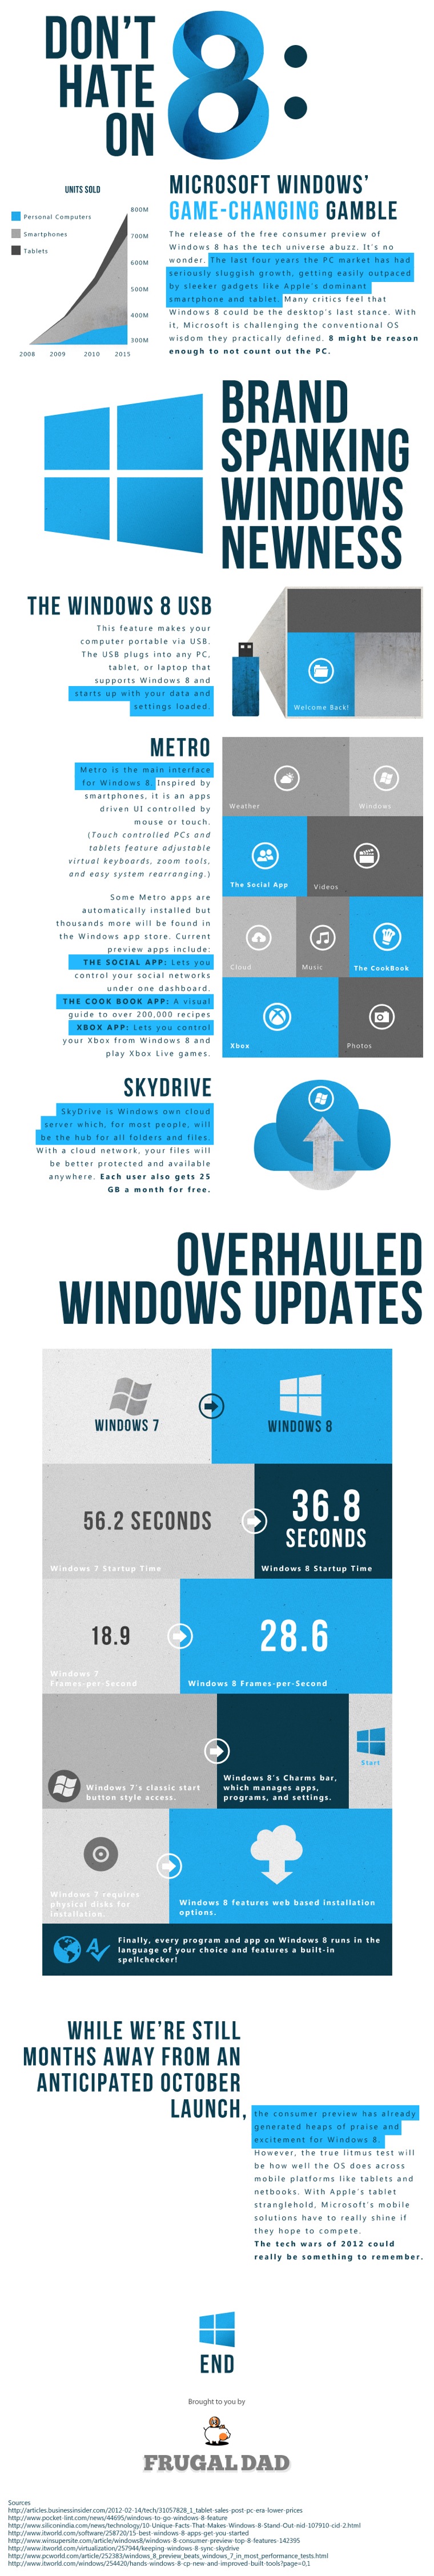 Windows 8 Infographic